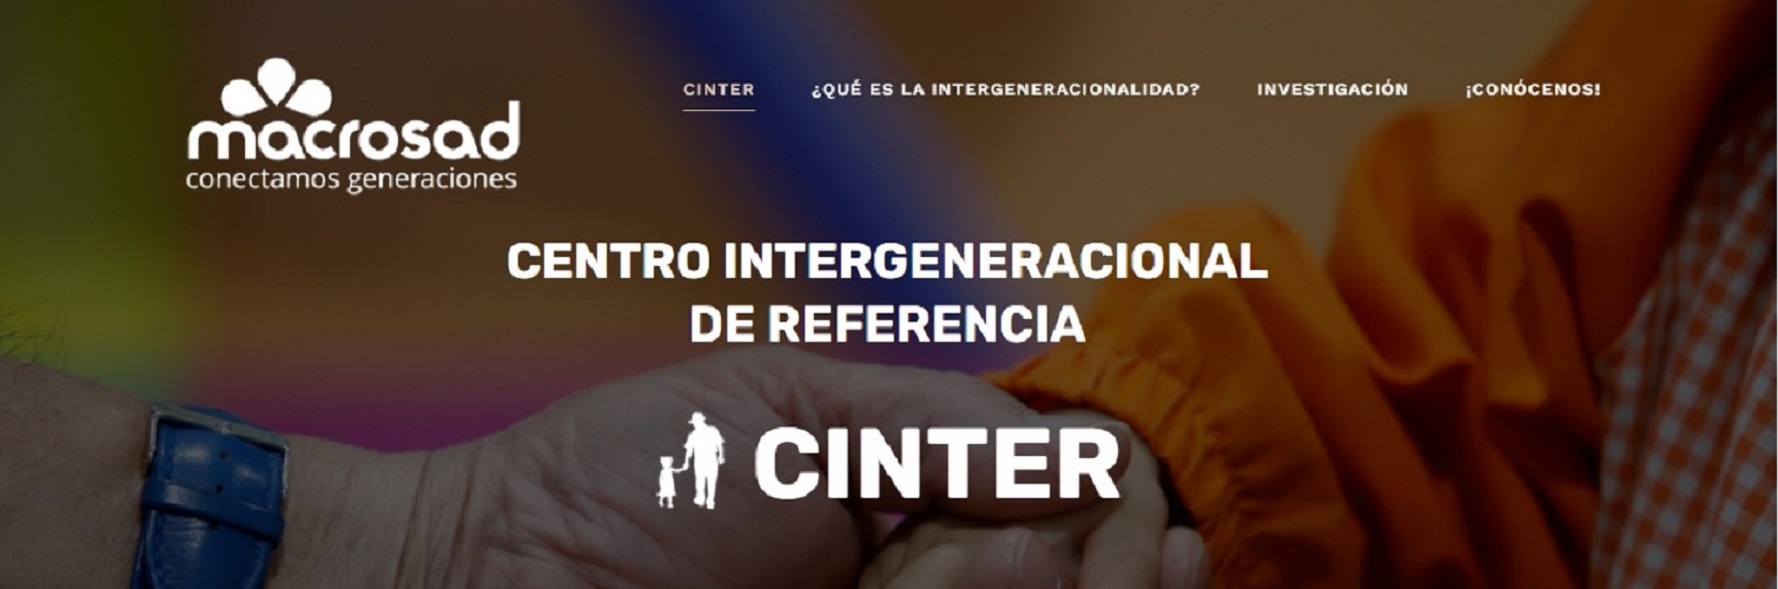 Captura de pantalla de la nueva web del Centro Intergeneracional de Referencia de Macrosad